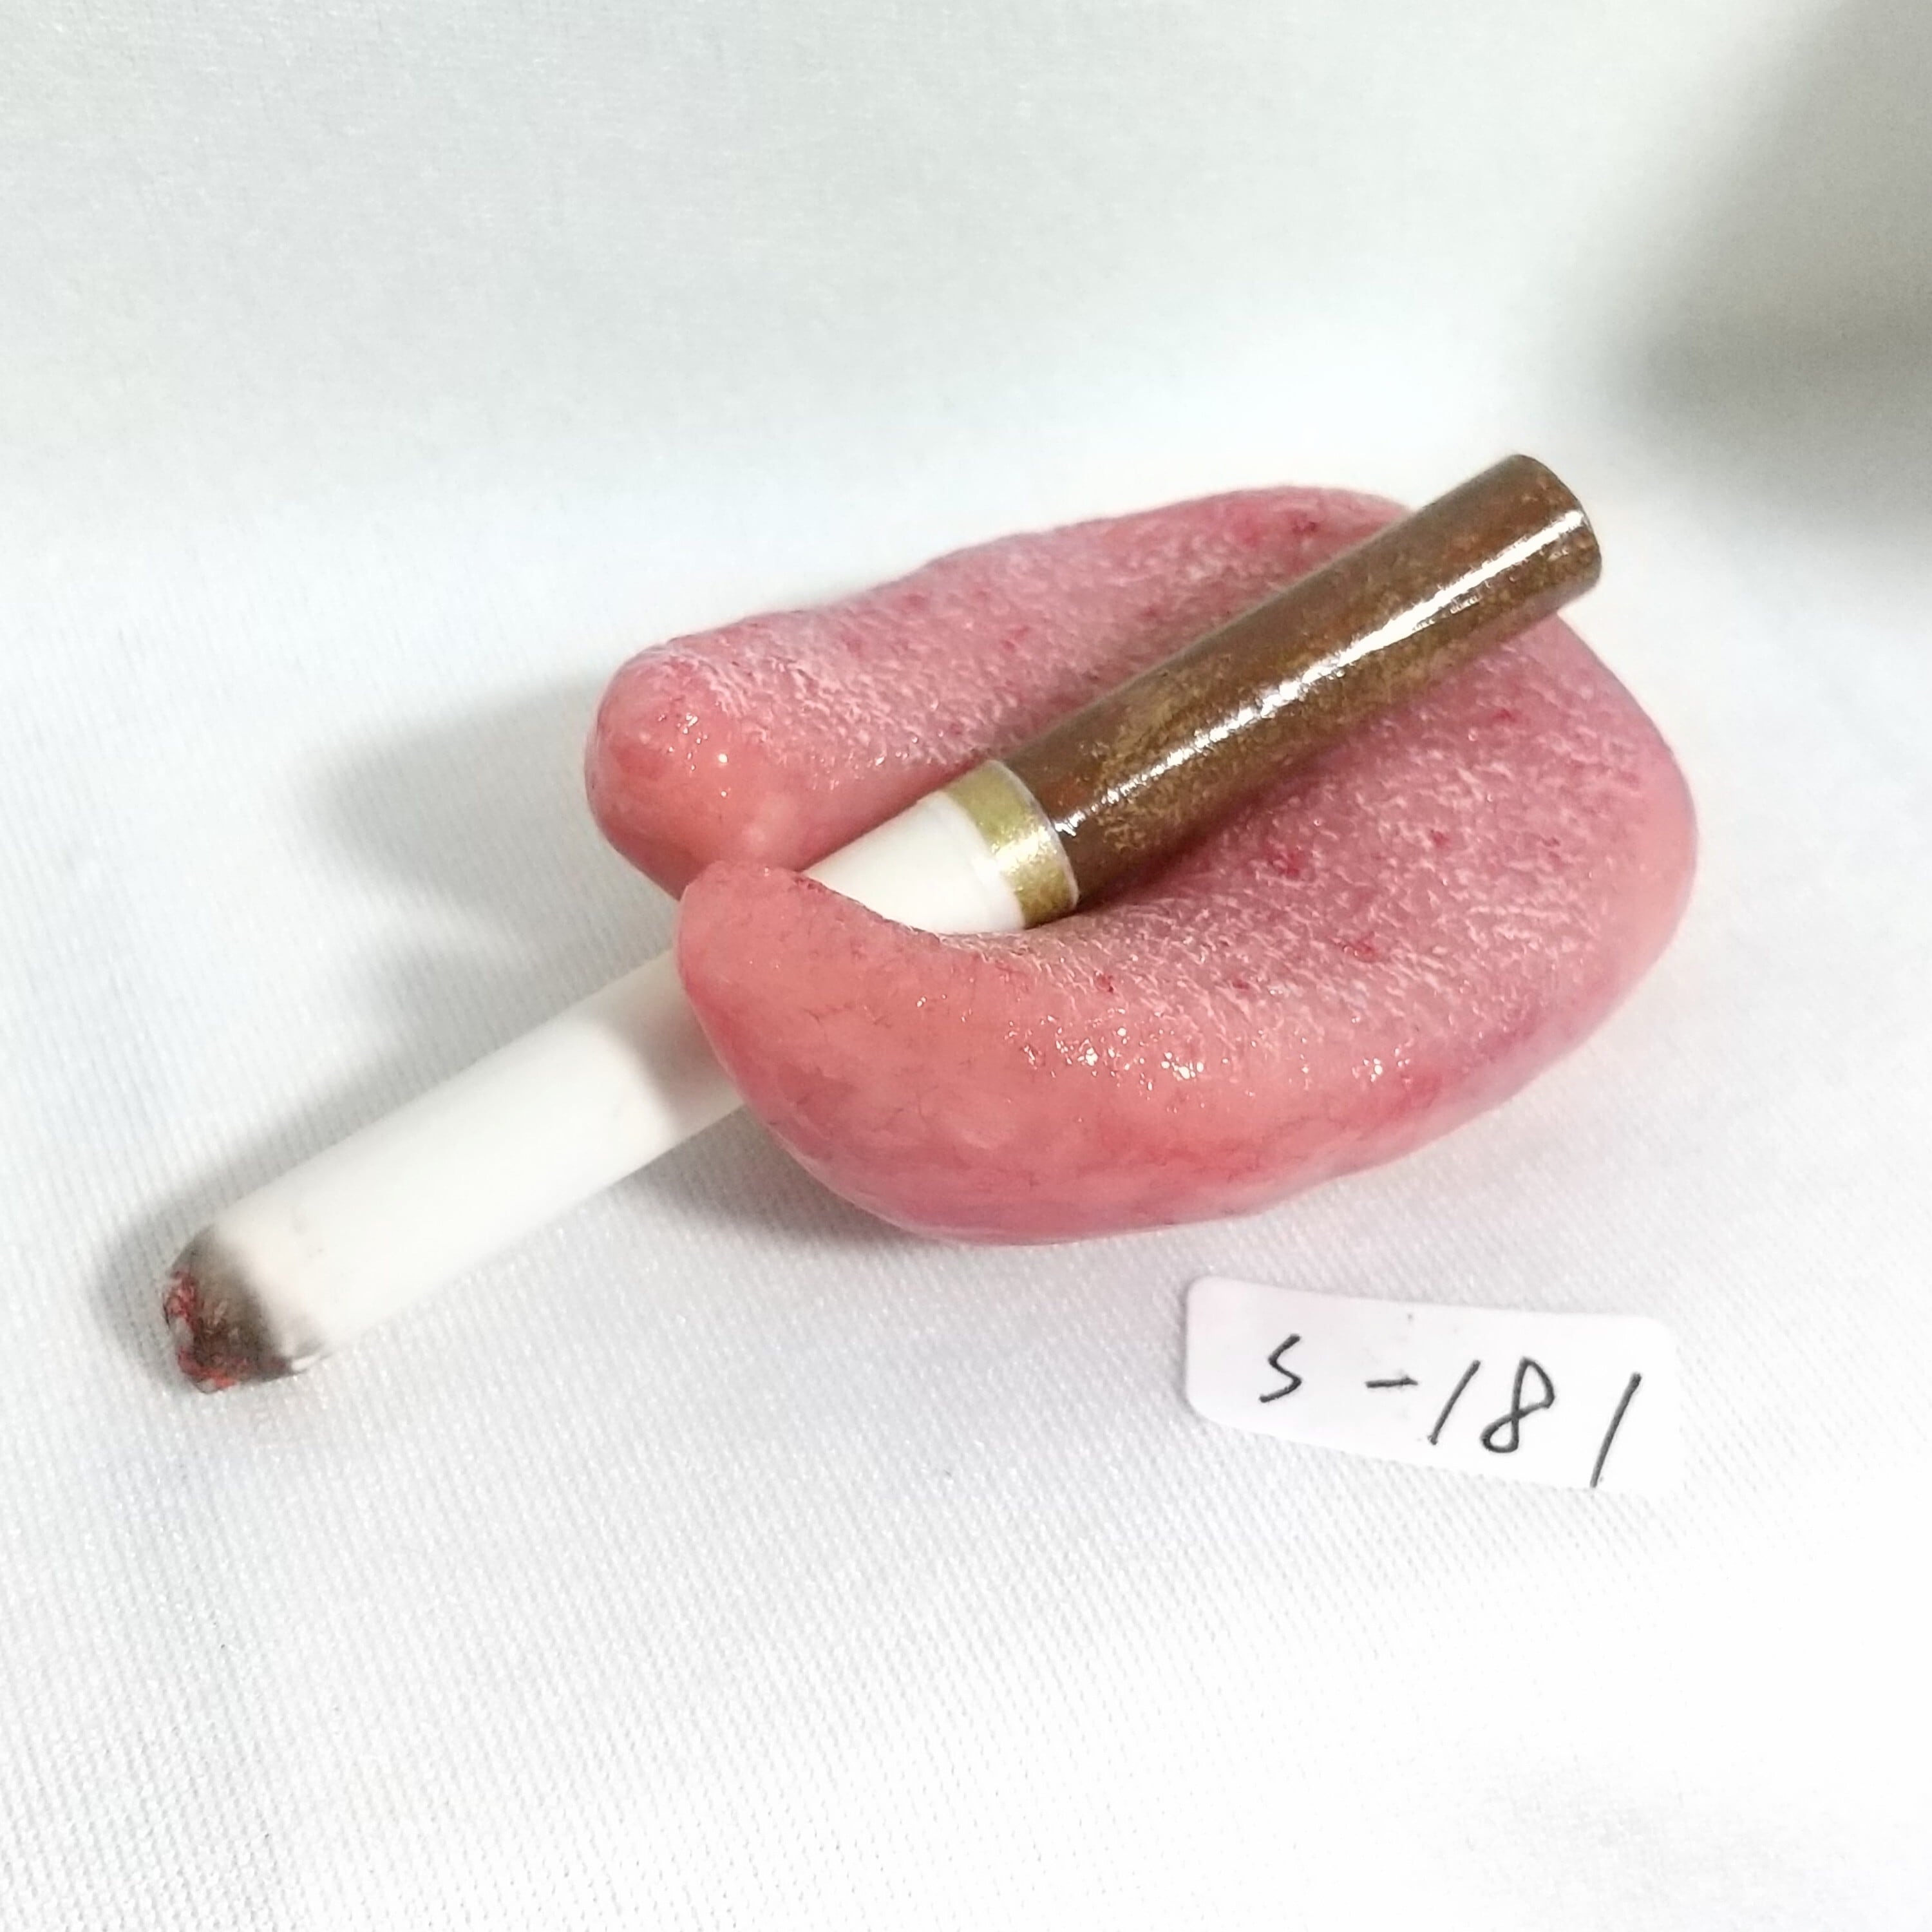 S-181)タバコを挟めるスプリットタンの模型 | www.esn-ub.org